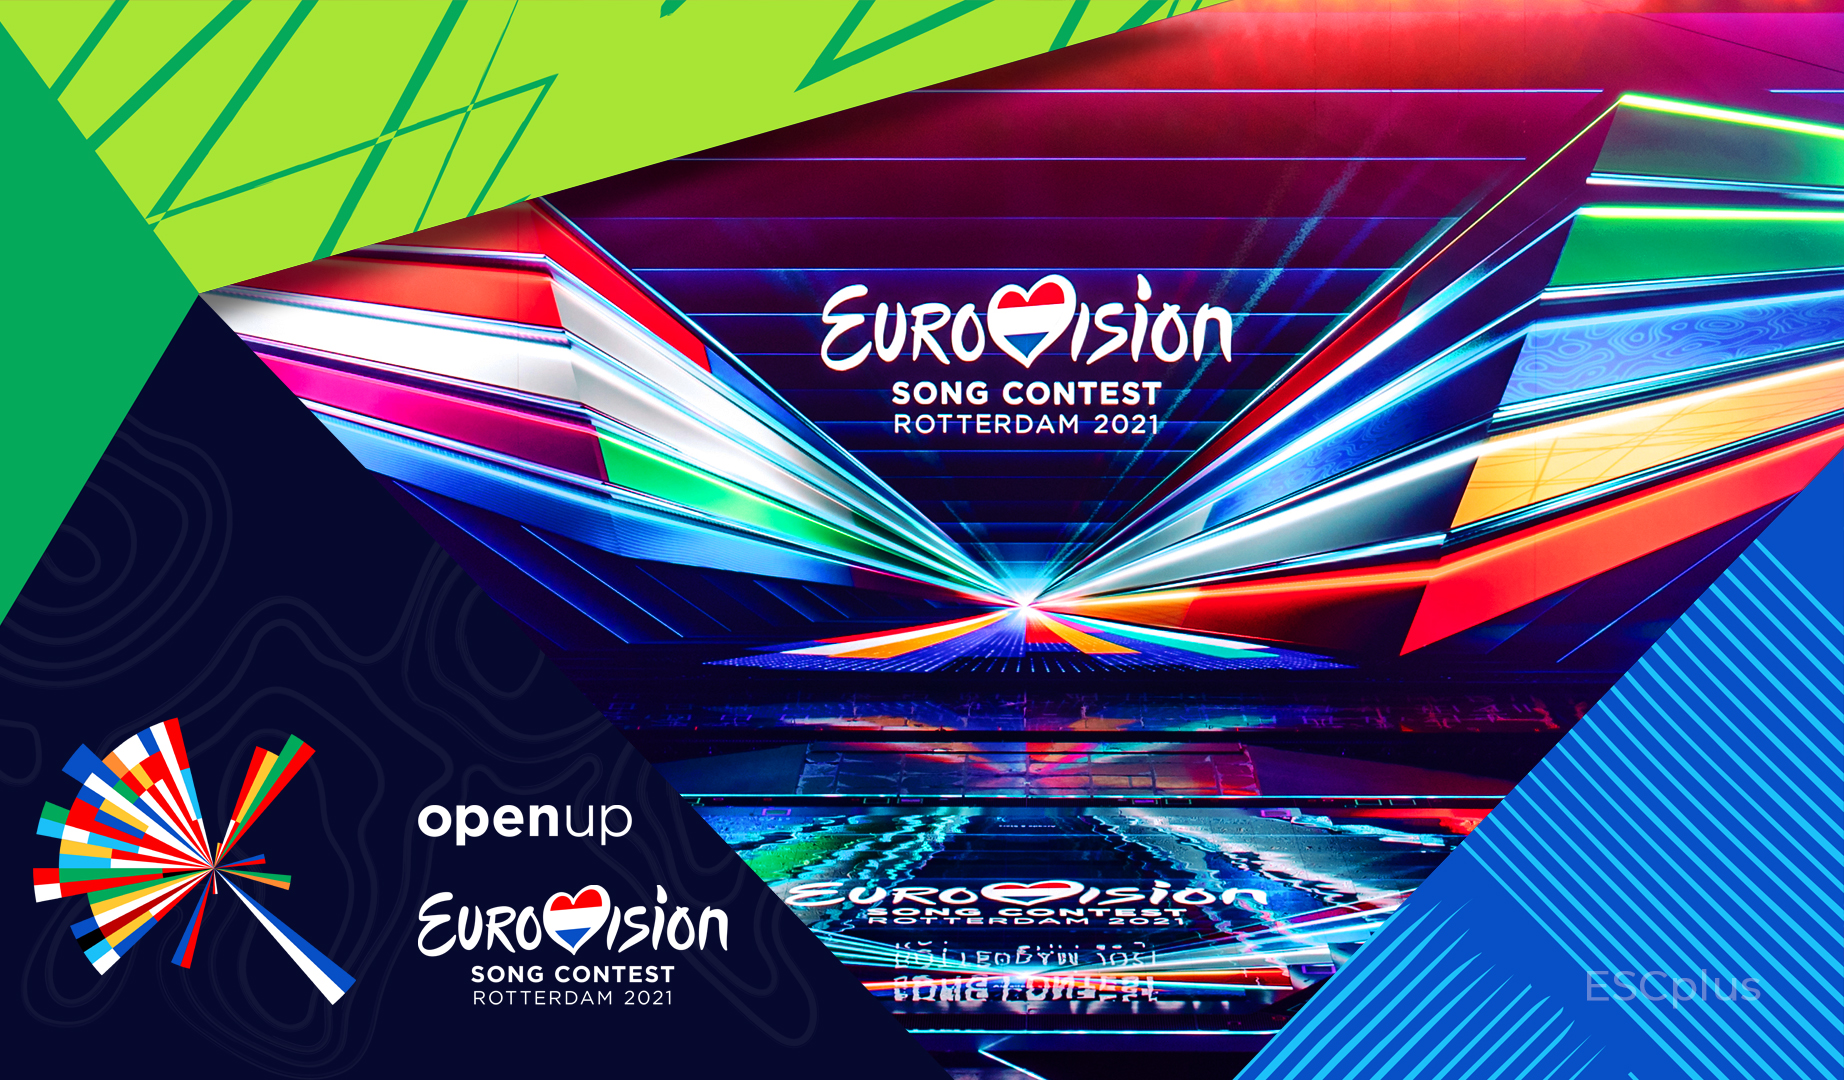 ¡Róterdam busca a los últimos finalistas de Eurovisión 2021 en la Segunda Semifinal de esta noche!